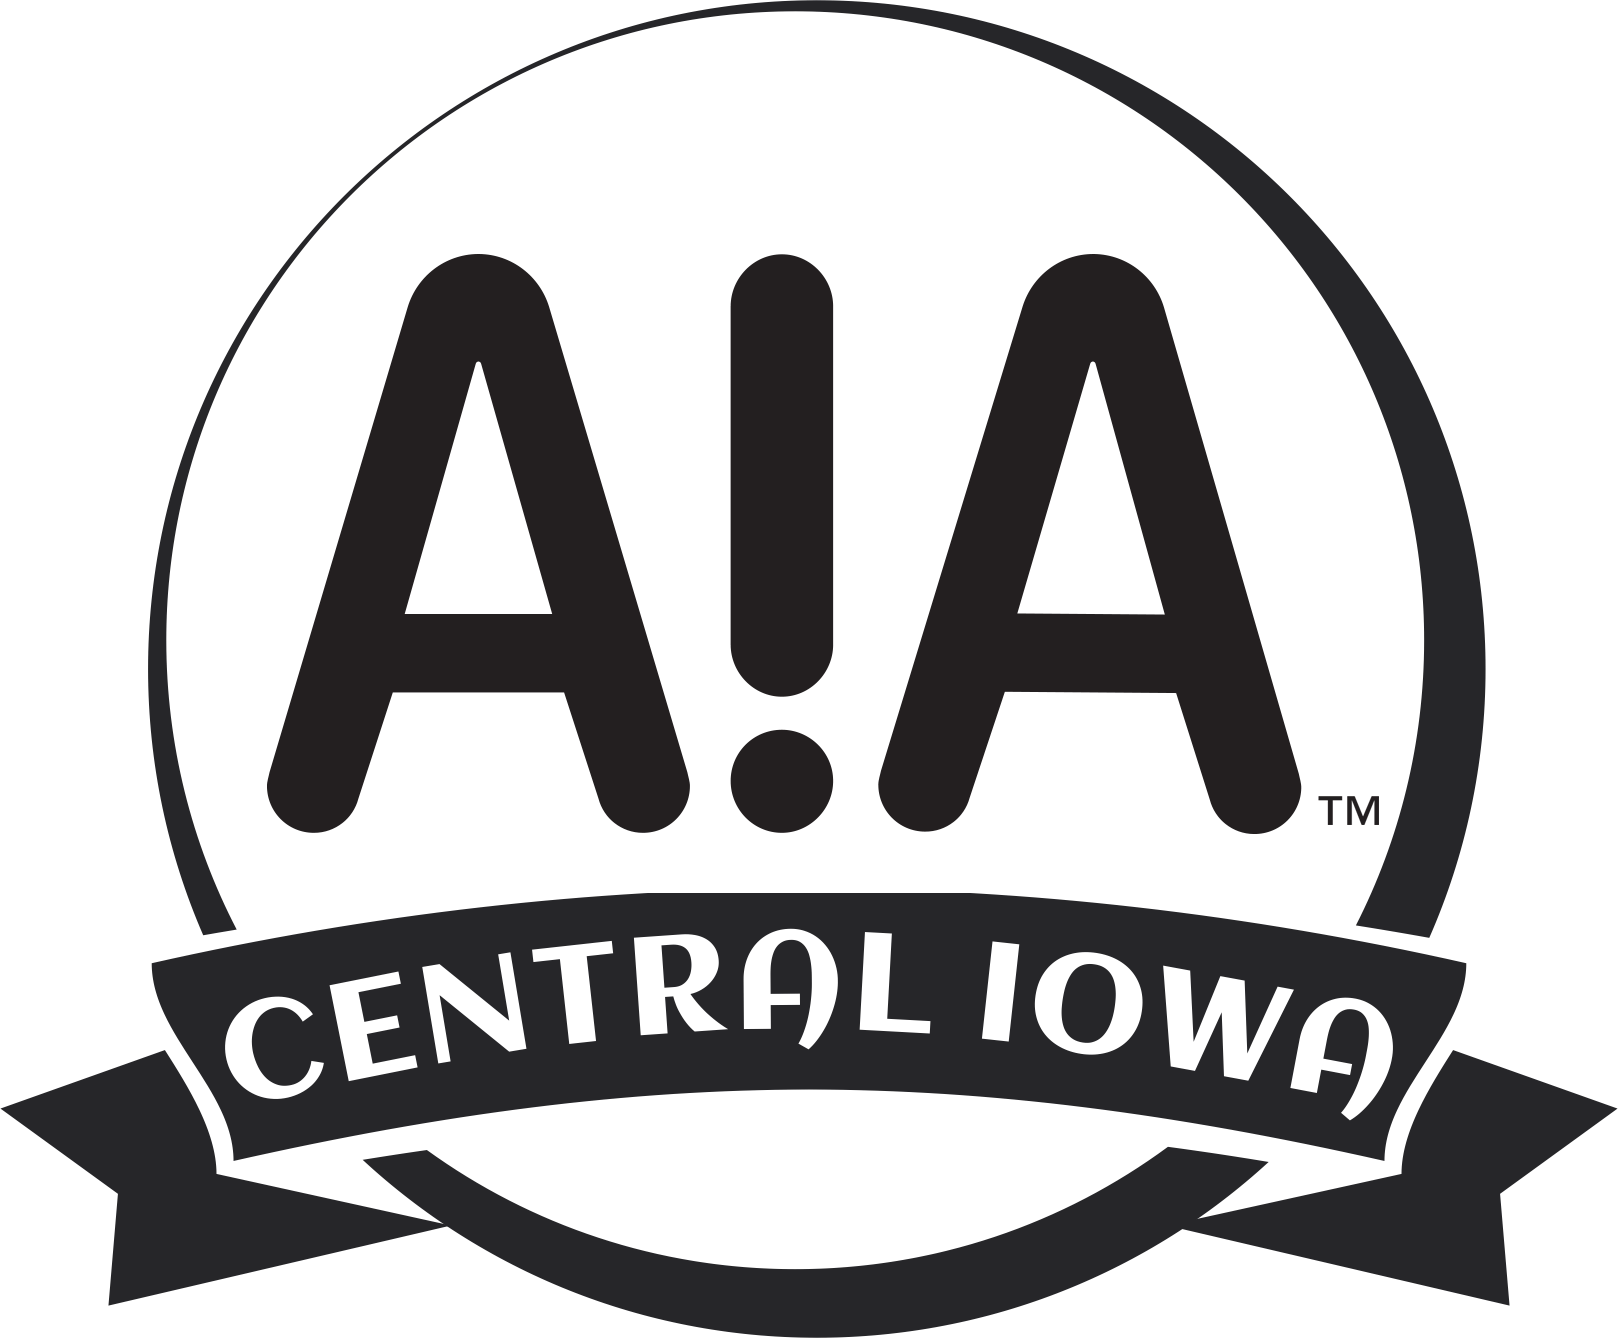 Central Iowa's Logo